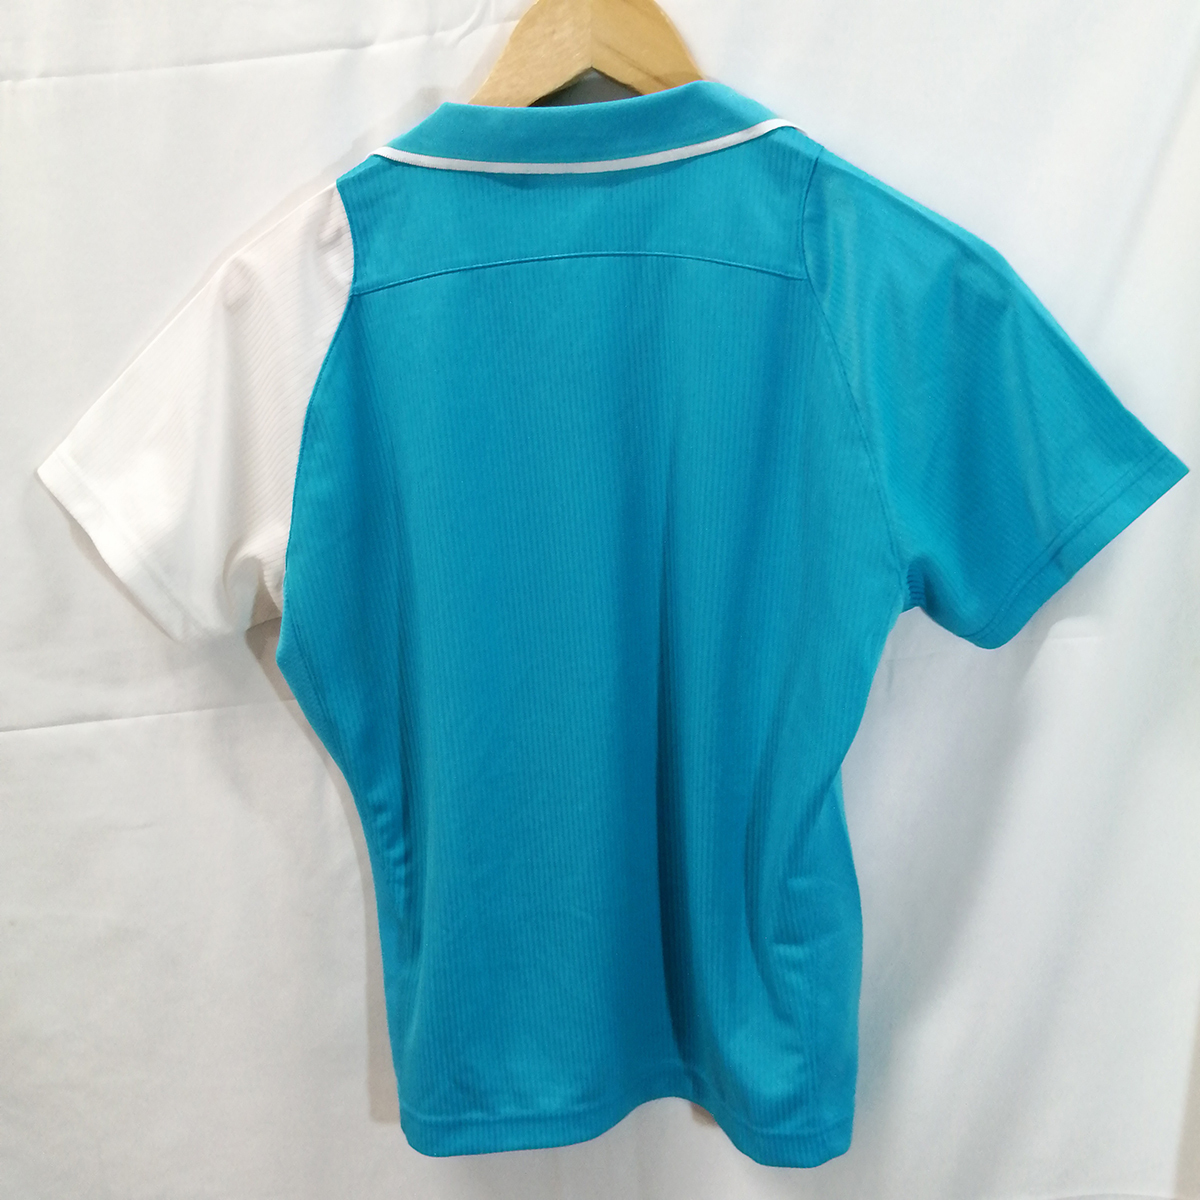 YONEX ゲームシャツ 半袖シャツ プラシャツ ライトブルー サイズL レディース バドミントン テニス ヨネックス_画像3